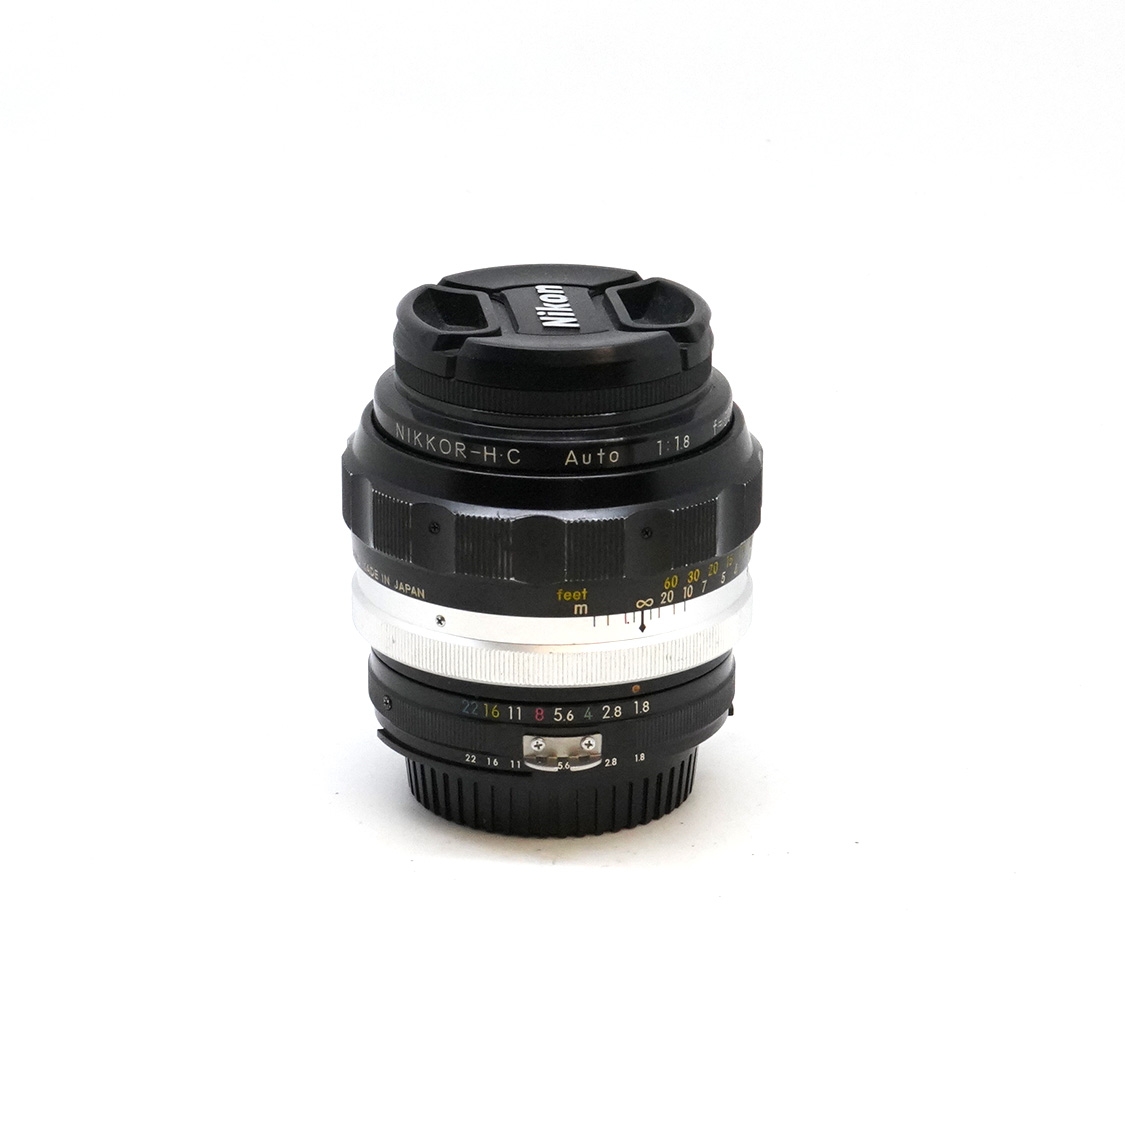 Nikon Non-AI 85mm F1.8 (BGN) Used Lens